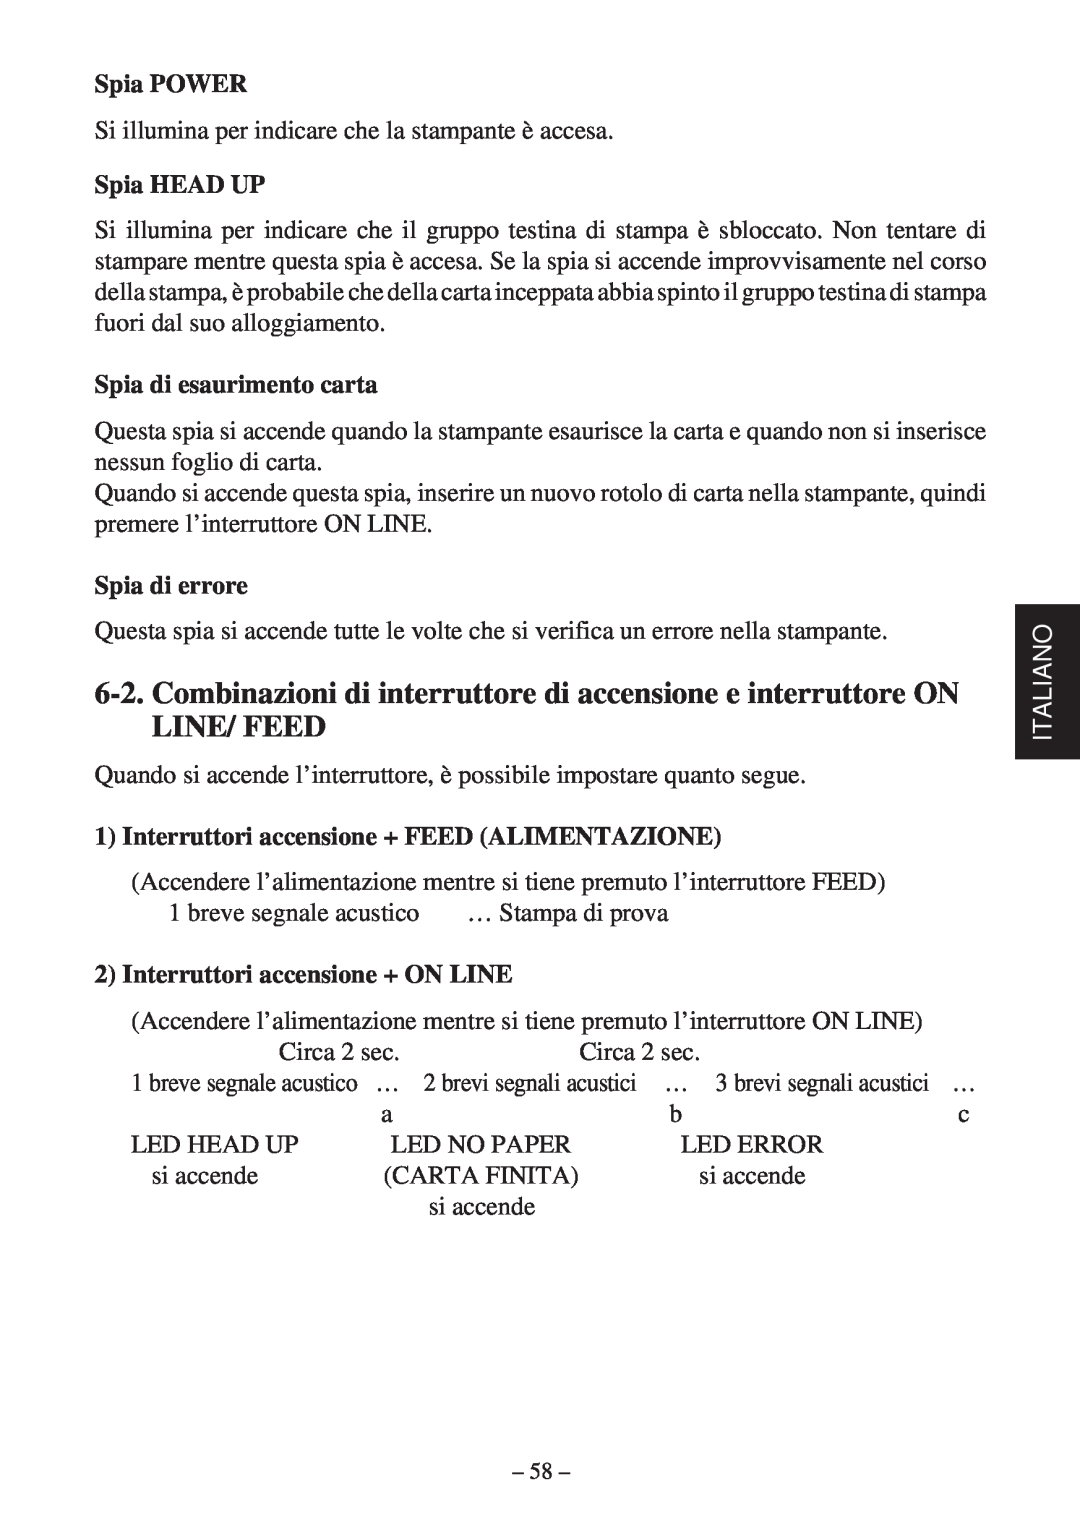 Star Micronics TSP400Z Series user manual Spia POWER, Spia HEAD UP, Spia di esaurimento carta, Spia di errore, Italiano 